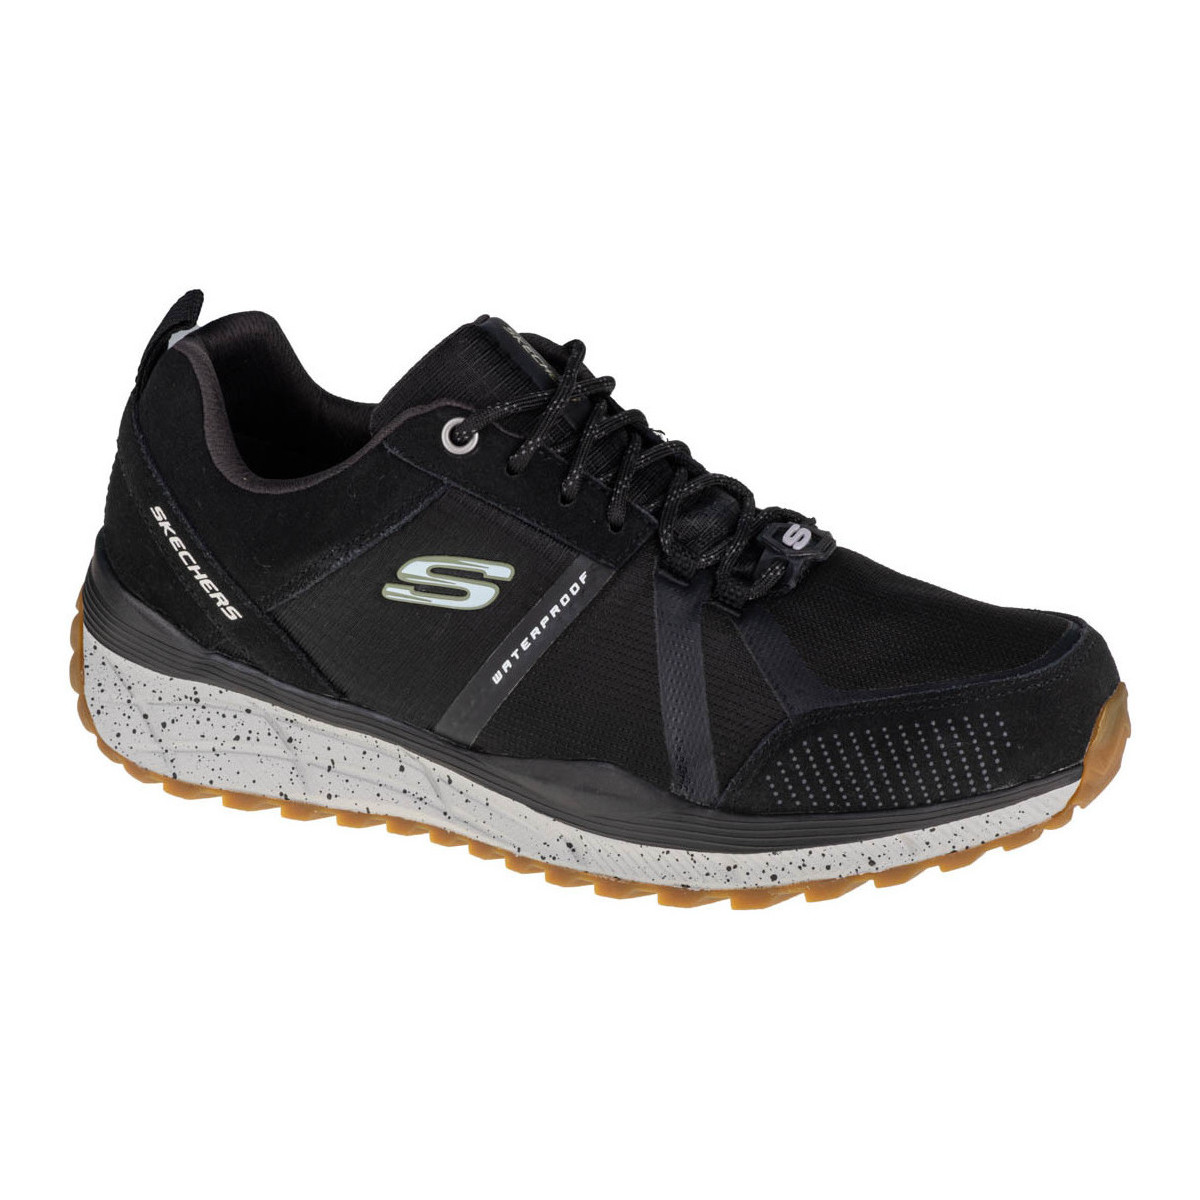 Παπούτσια Άνδρας Πεζοπορίας Skechers Equalizer 4.0 Trail Trx Black